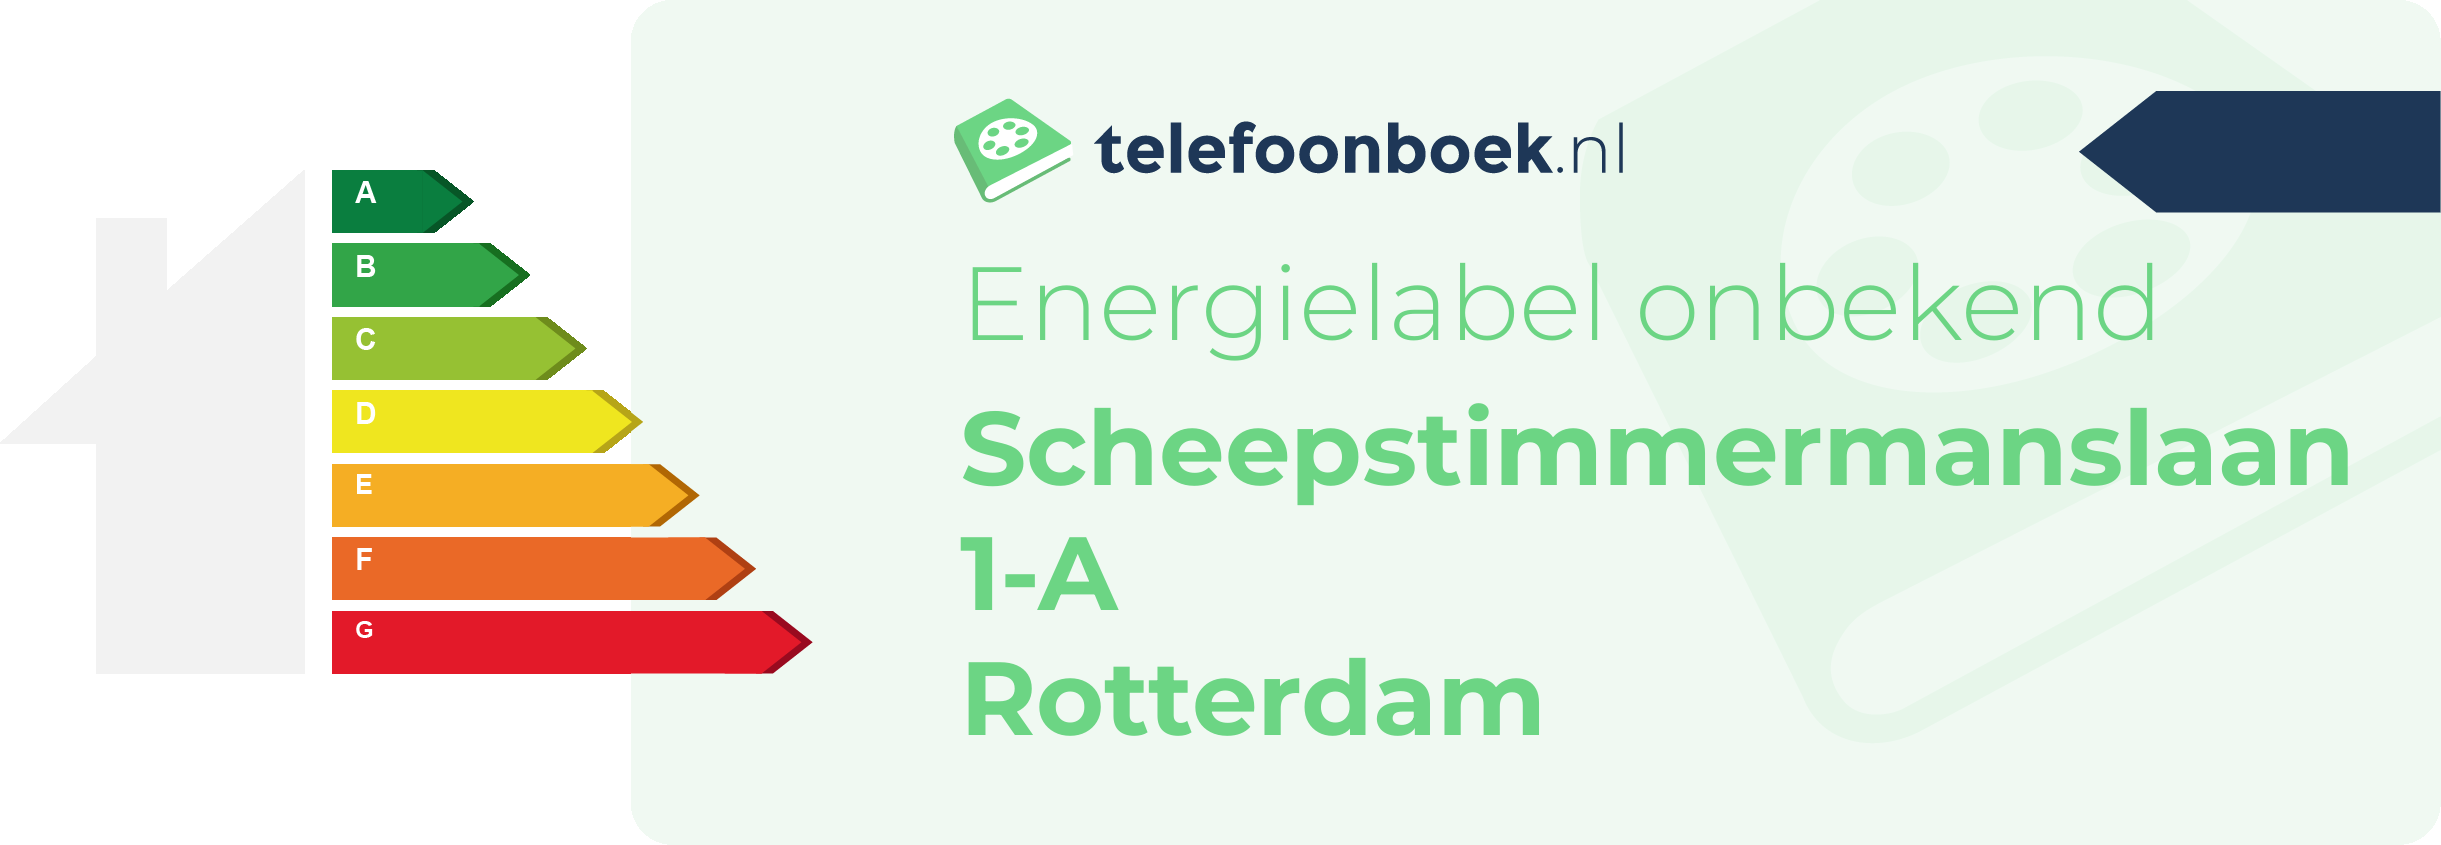 Energielabel Scheepstimmermanslaan 1-A Rotterdam